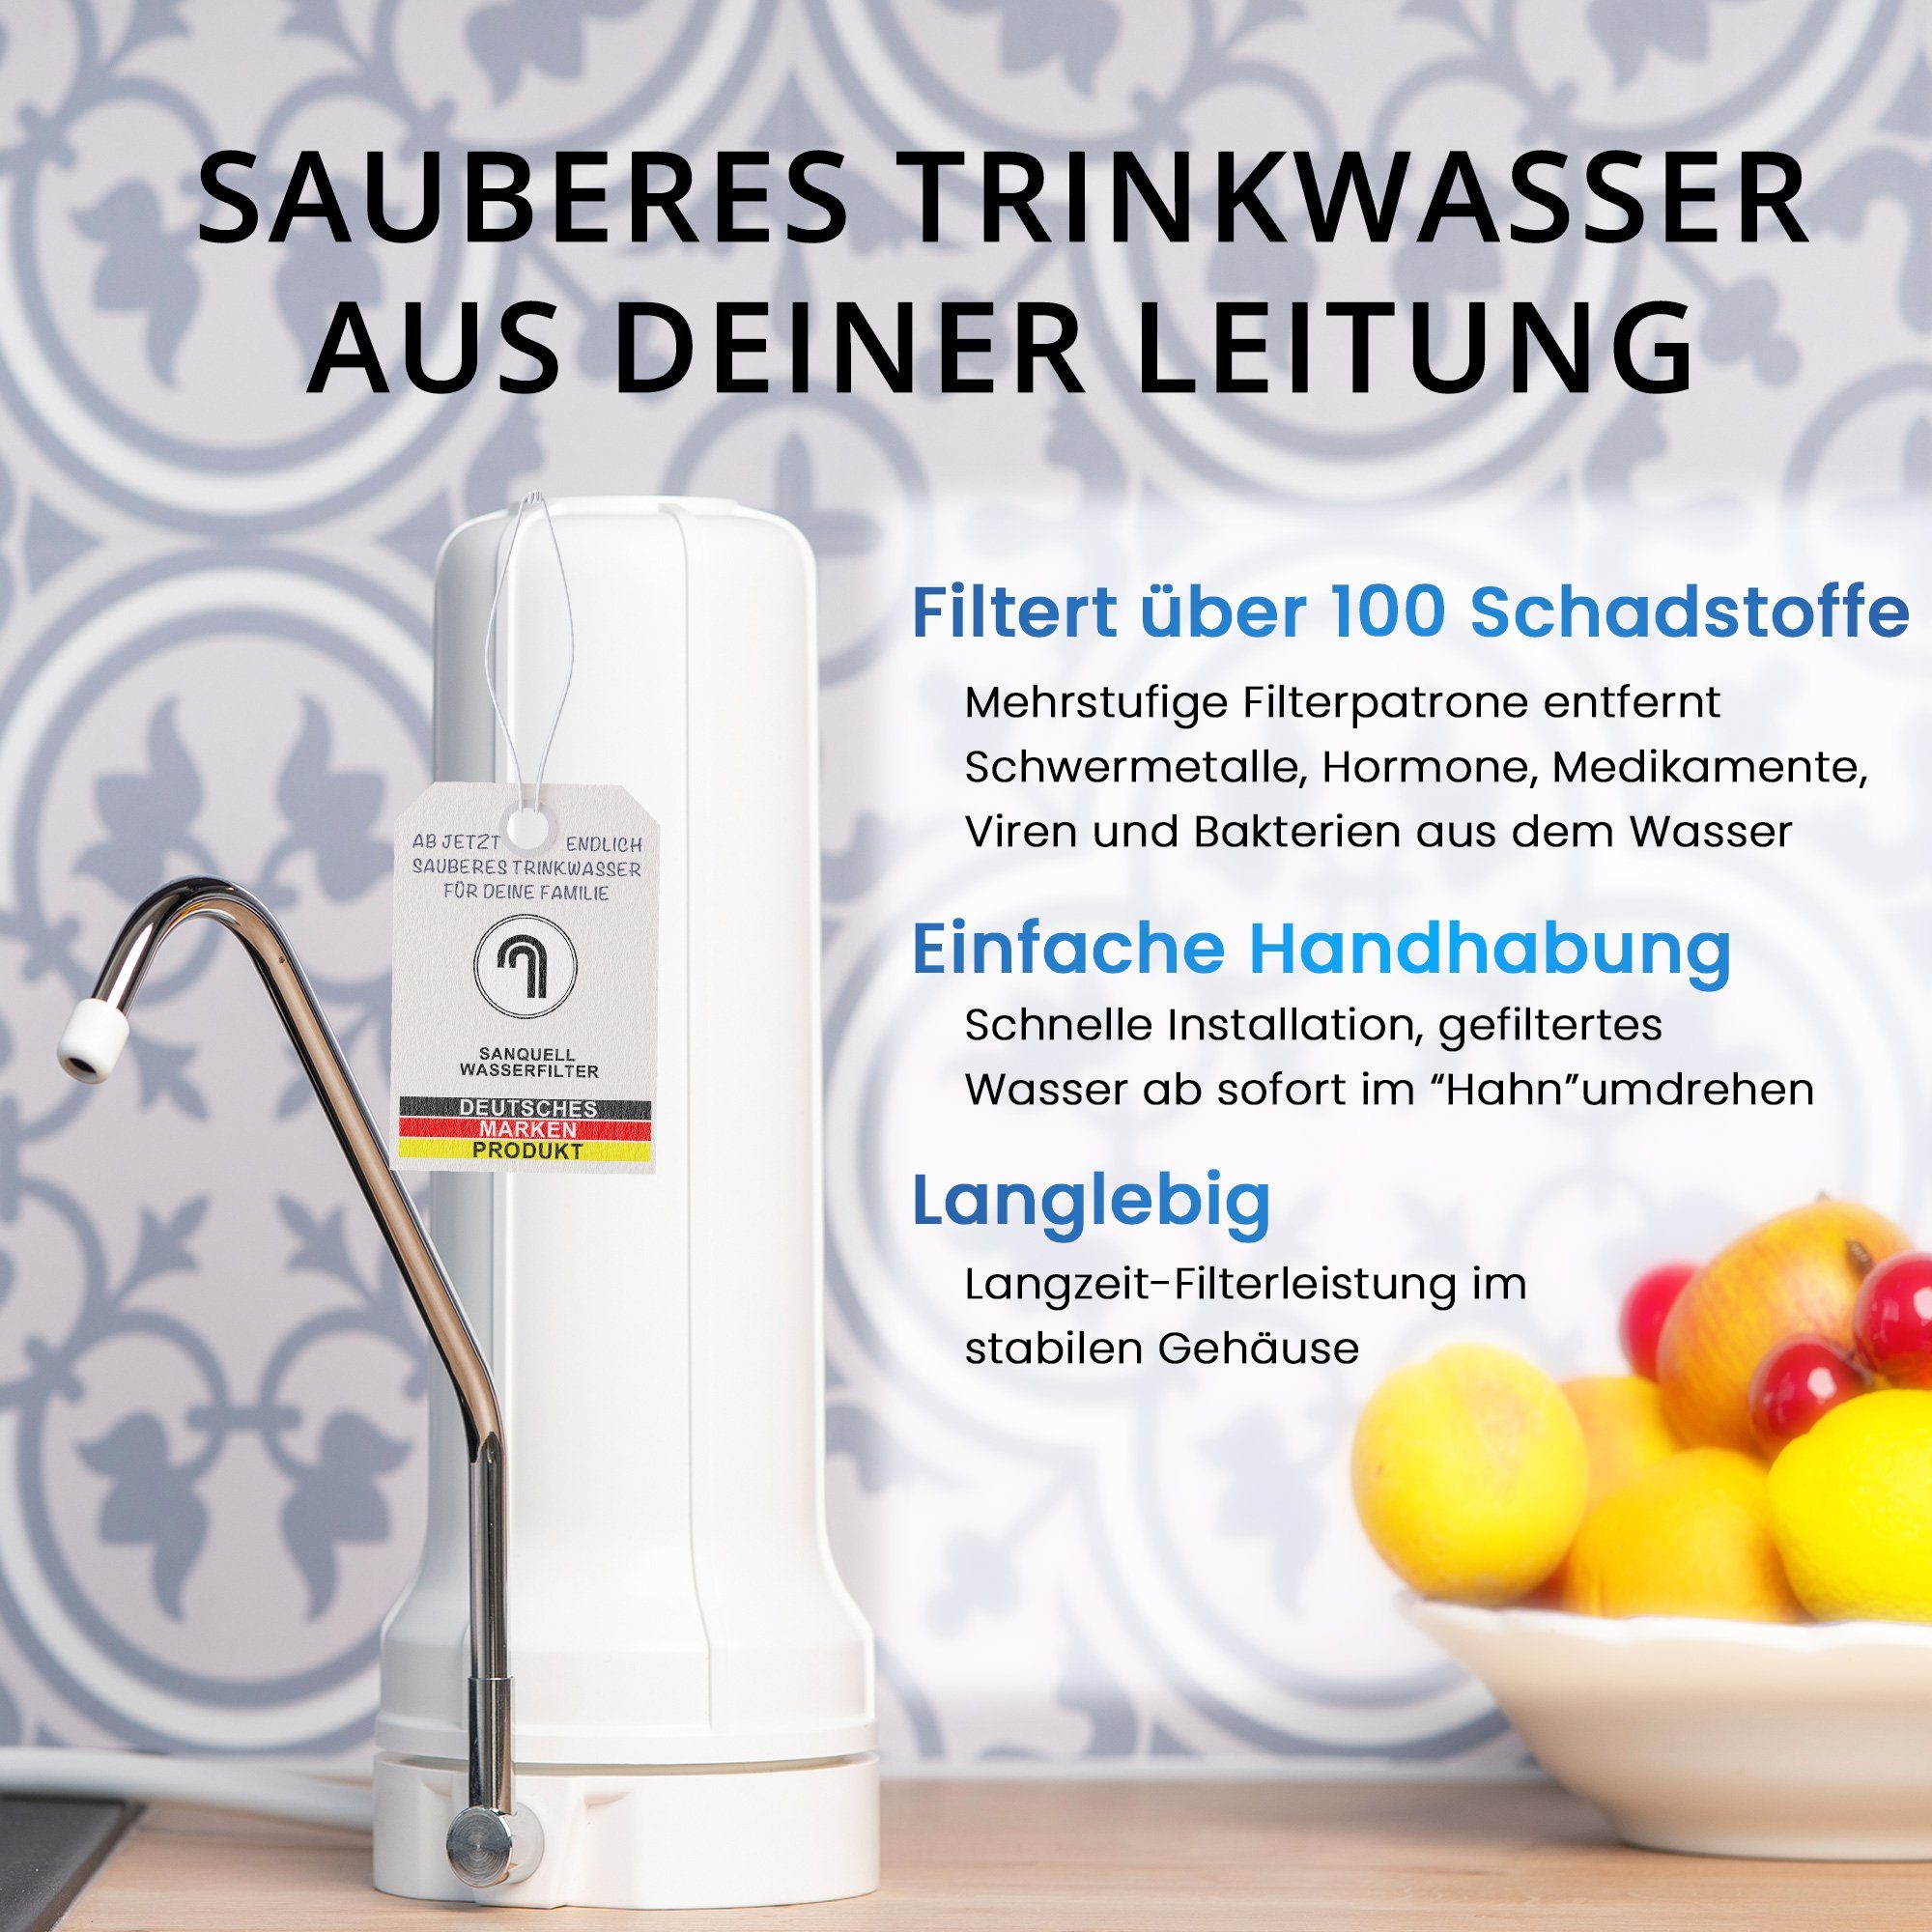 Simply, Filterung, deutsche Marke mehrstufe Auftisch Wasserfilter sanquell